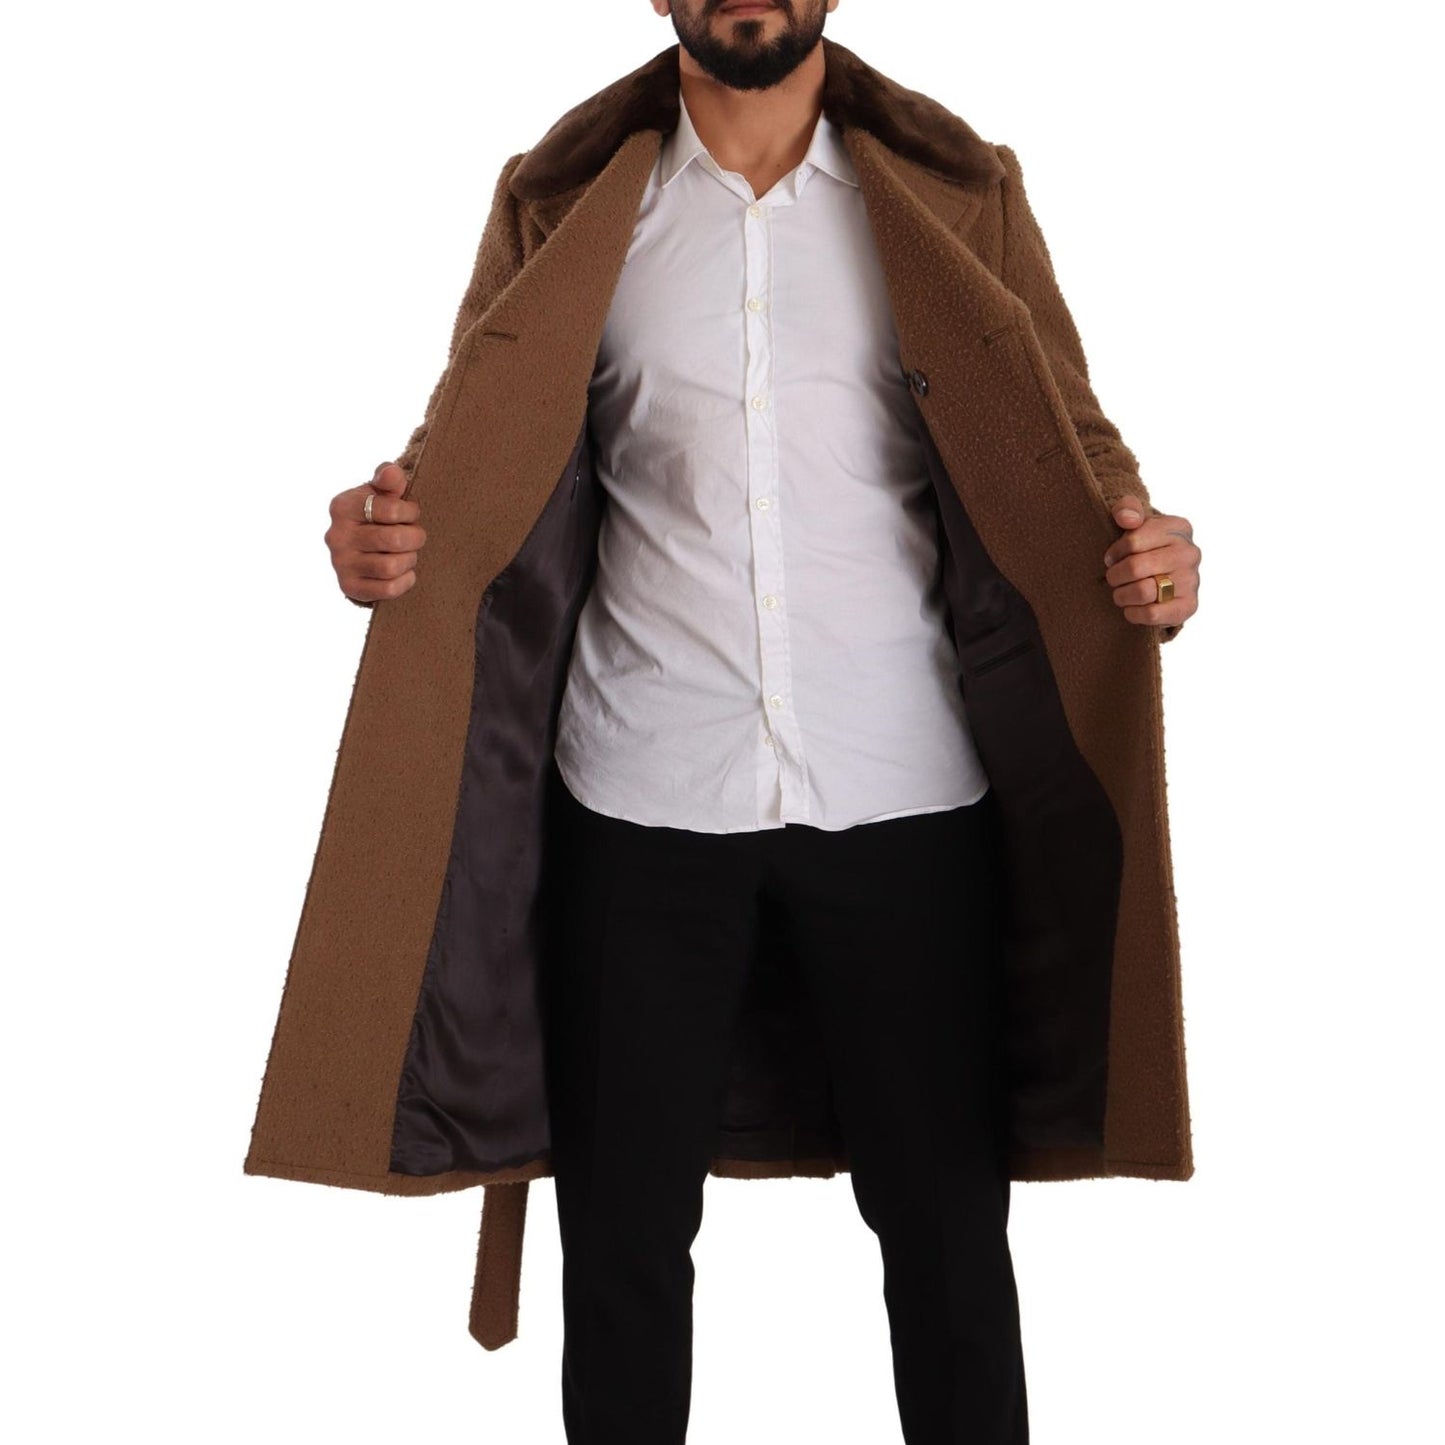 Dolce & Gabbana Elegant Double Breasted Wool Overcoat brown-wool-long-double-breasted-overcoat-jacket IMG_5046-scaled-58d12f50-e0c.jpg